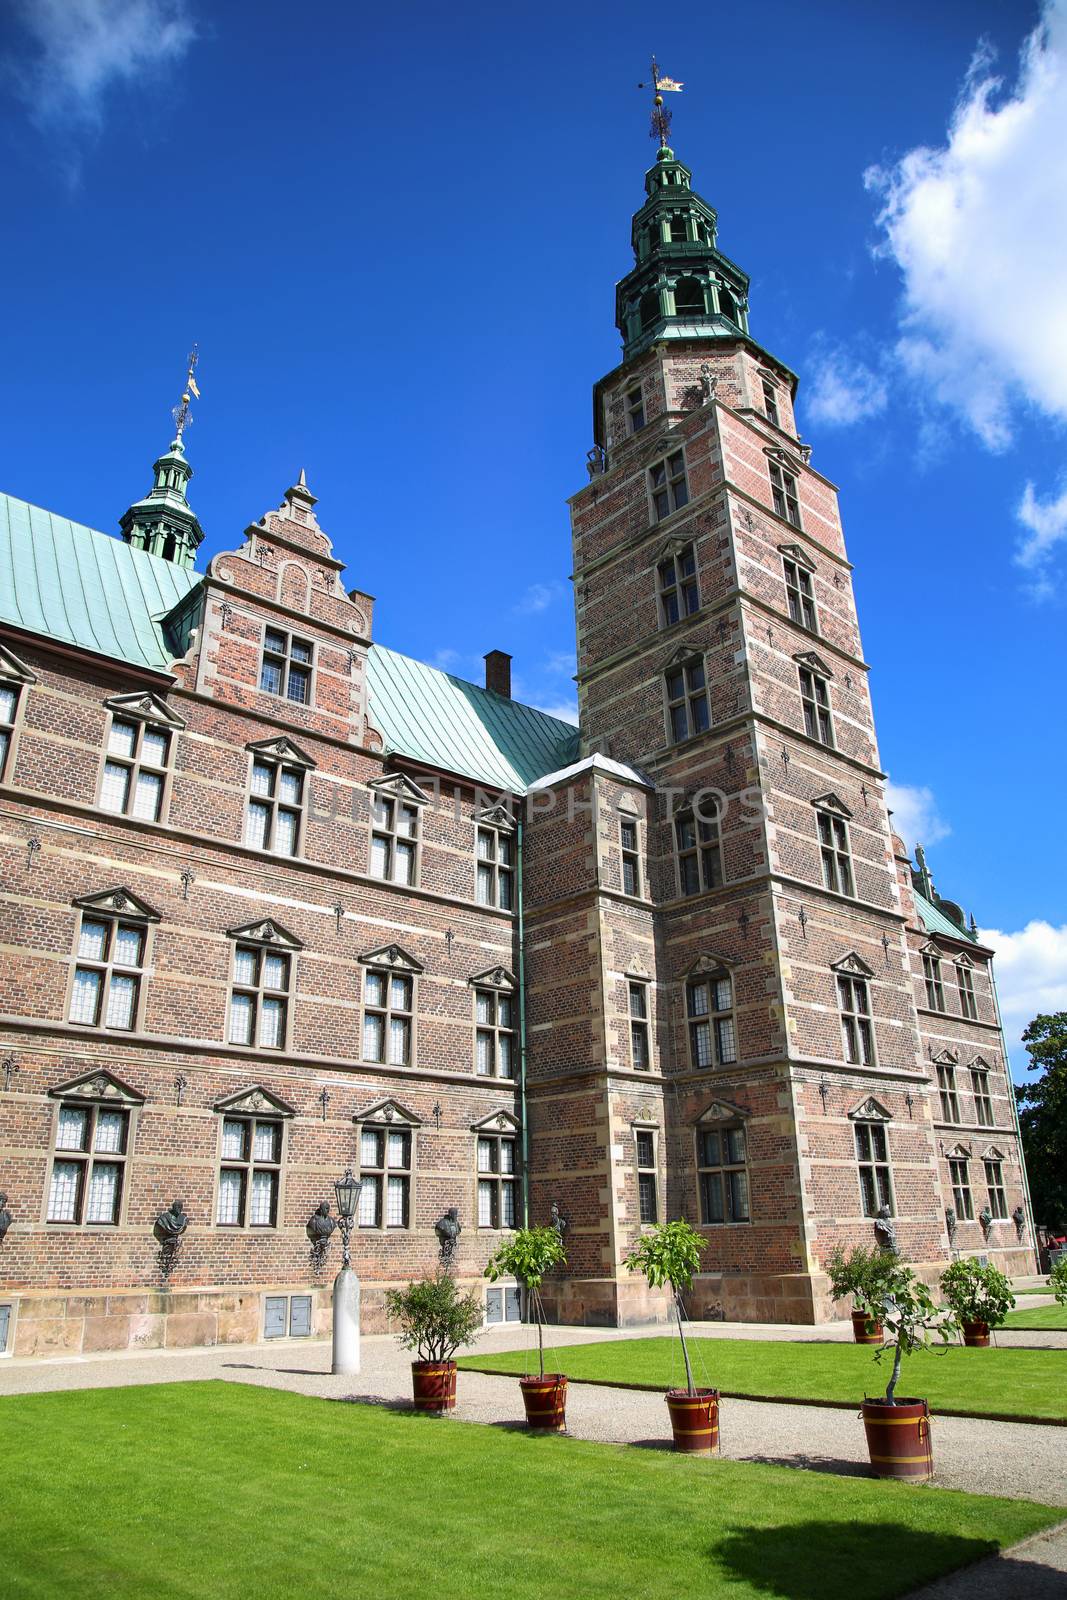 Rosenborg Castle, build by King Christian IV in Copenhagen, Denmark